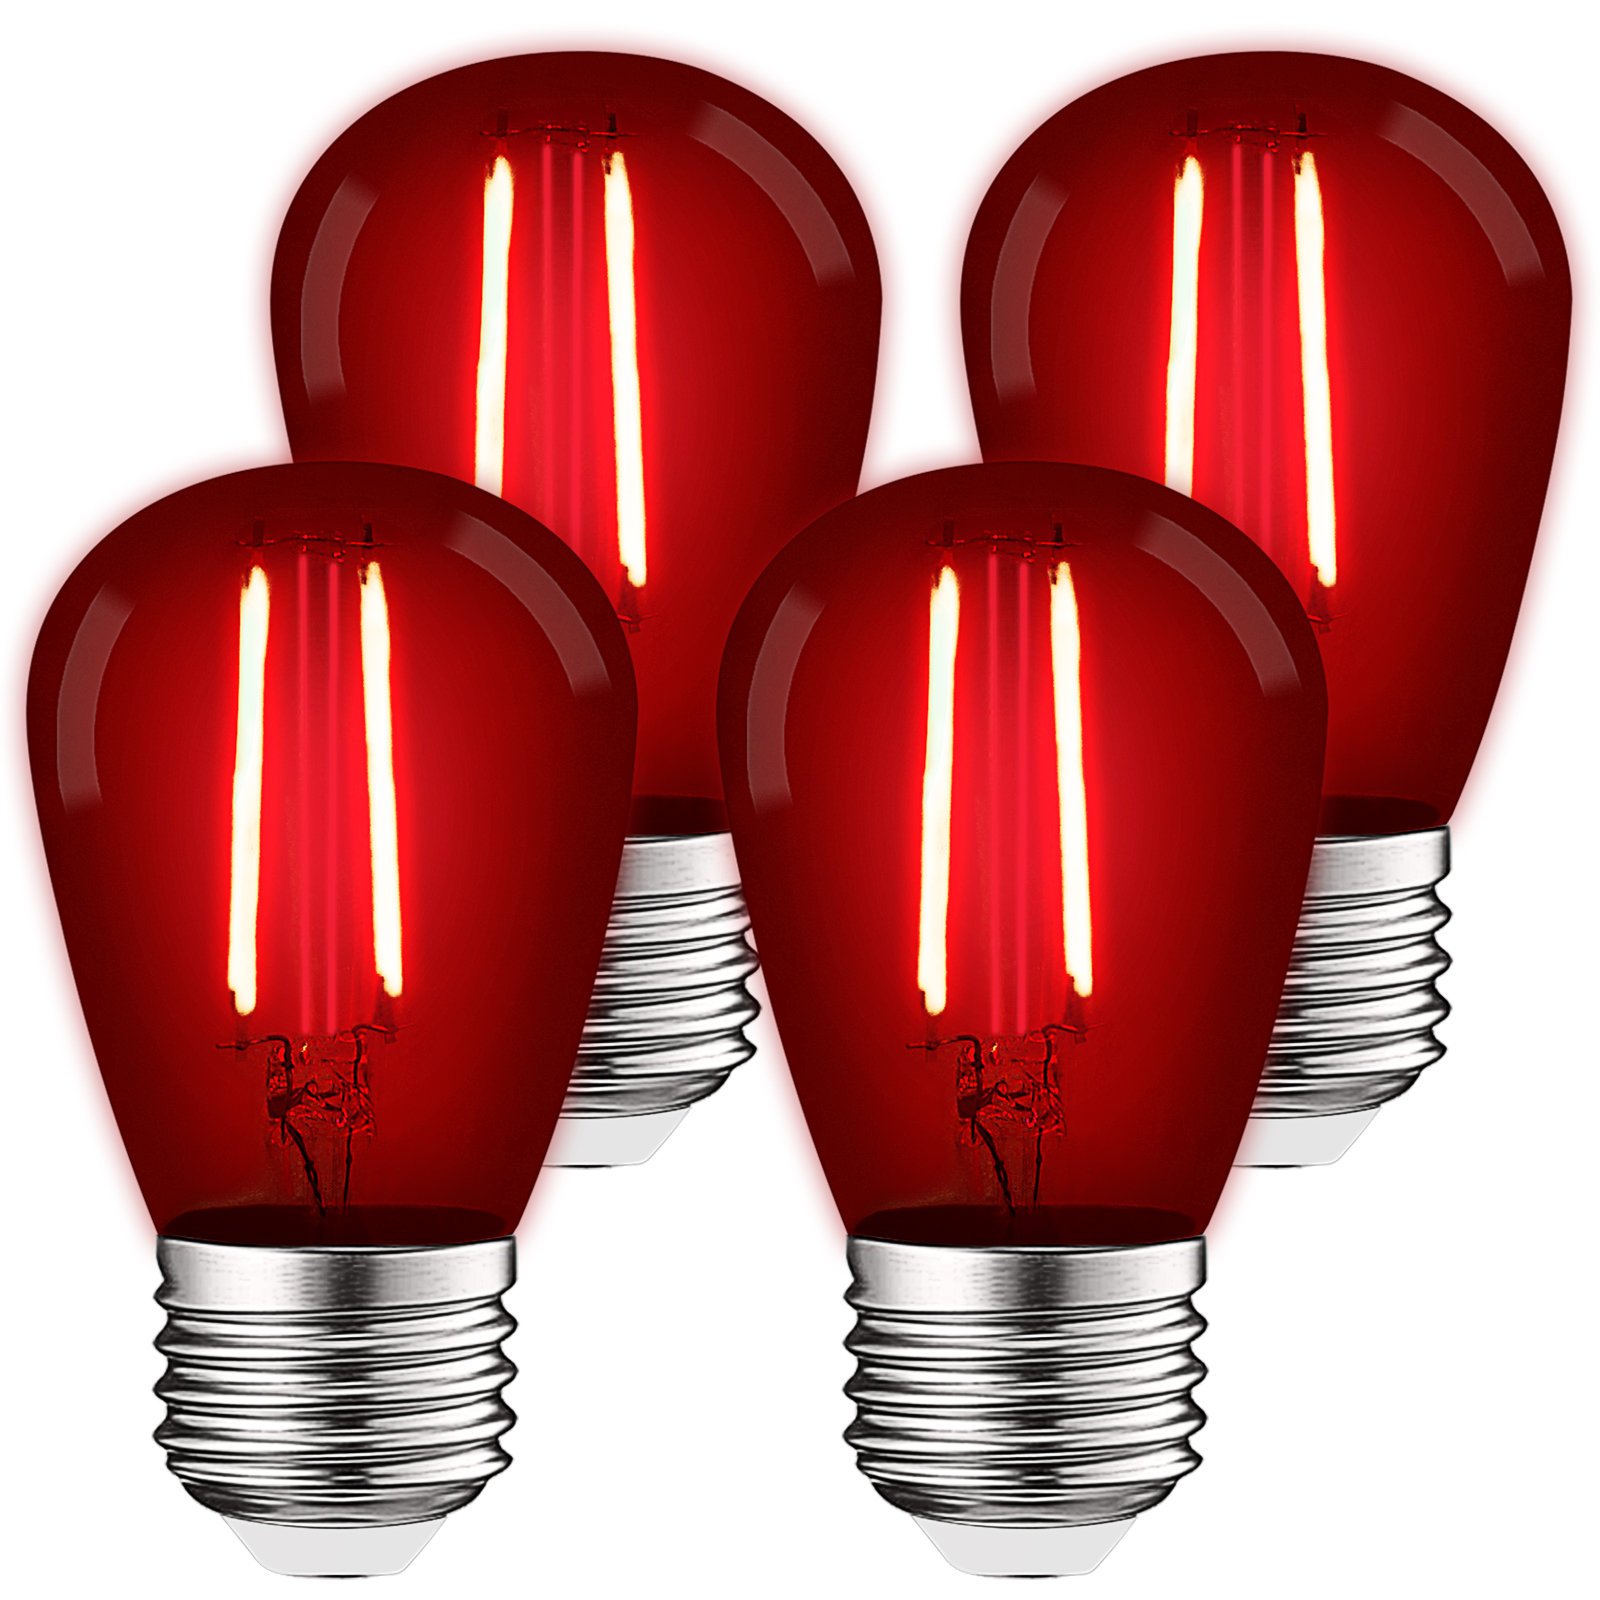 Luxrite 0.5 Watt S14 LED Colored String Light Bulb, E26/Medium